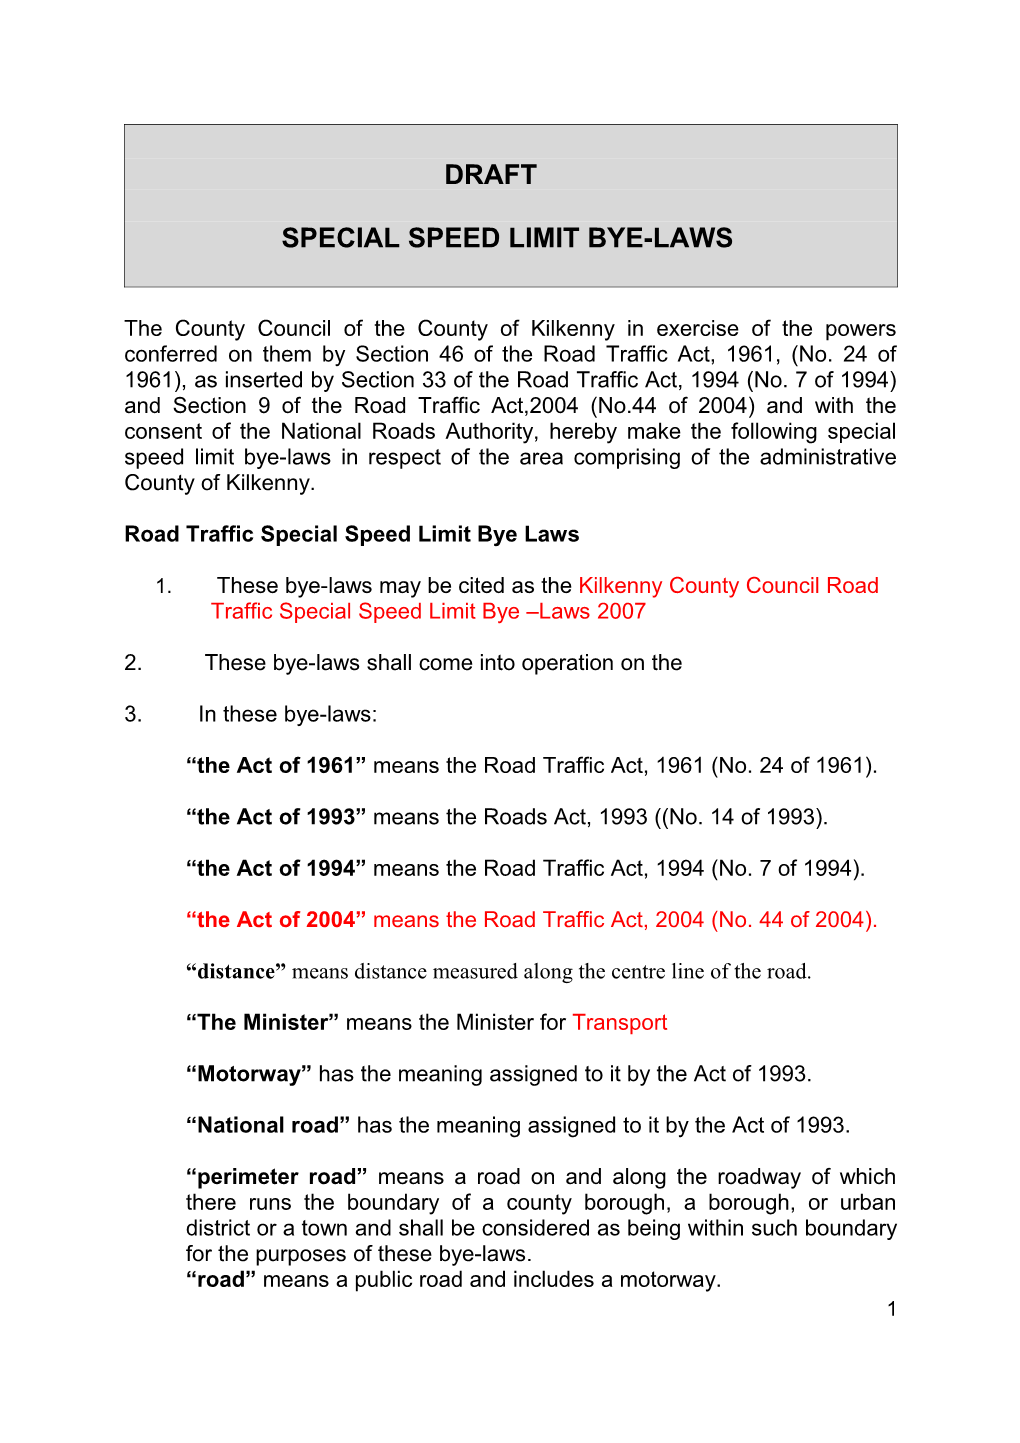 Speed Limit Bye-Laws